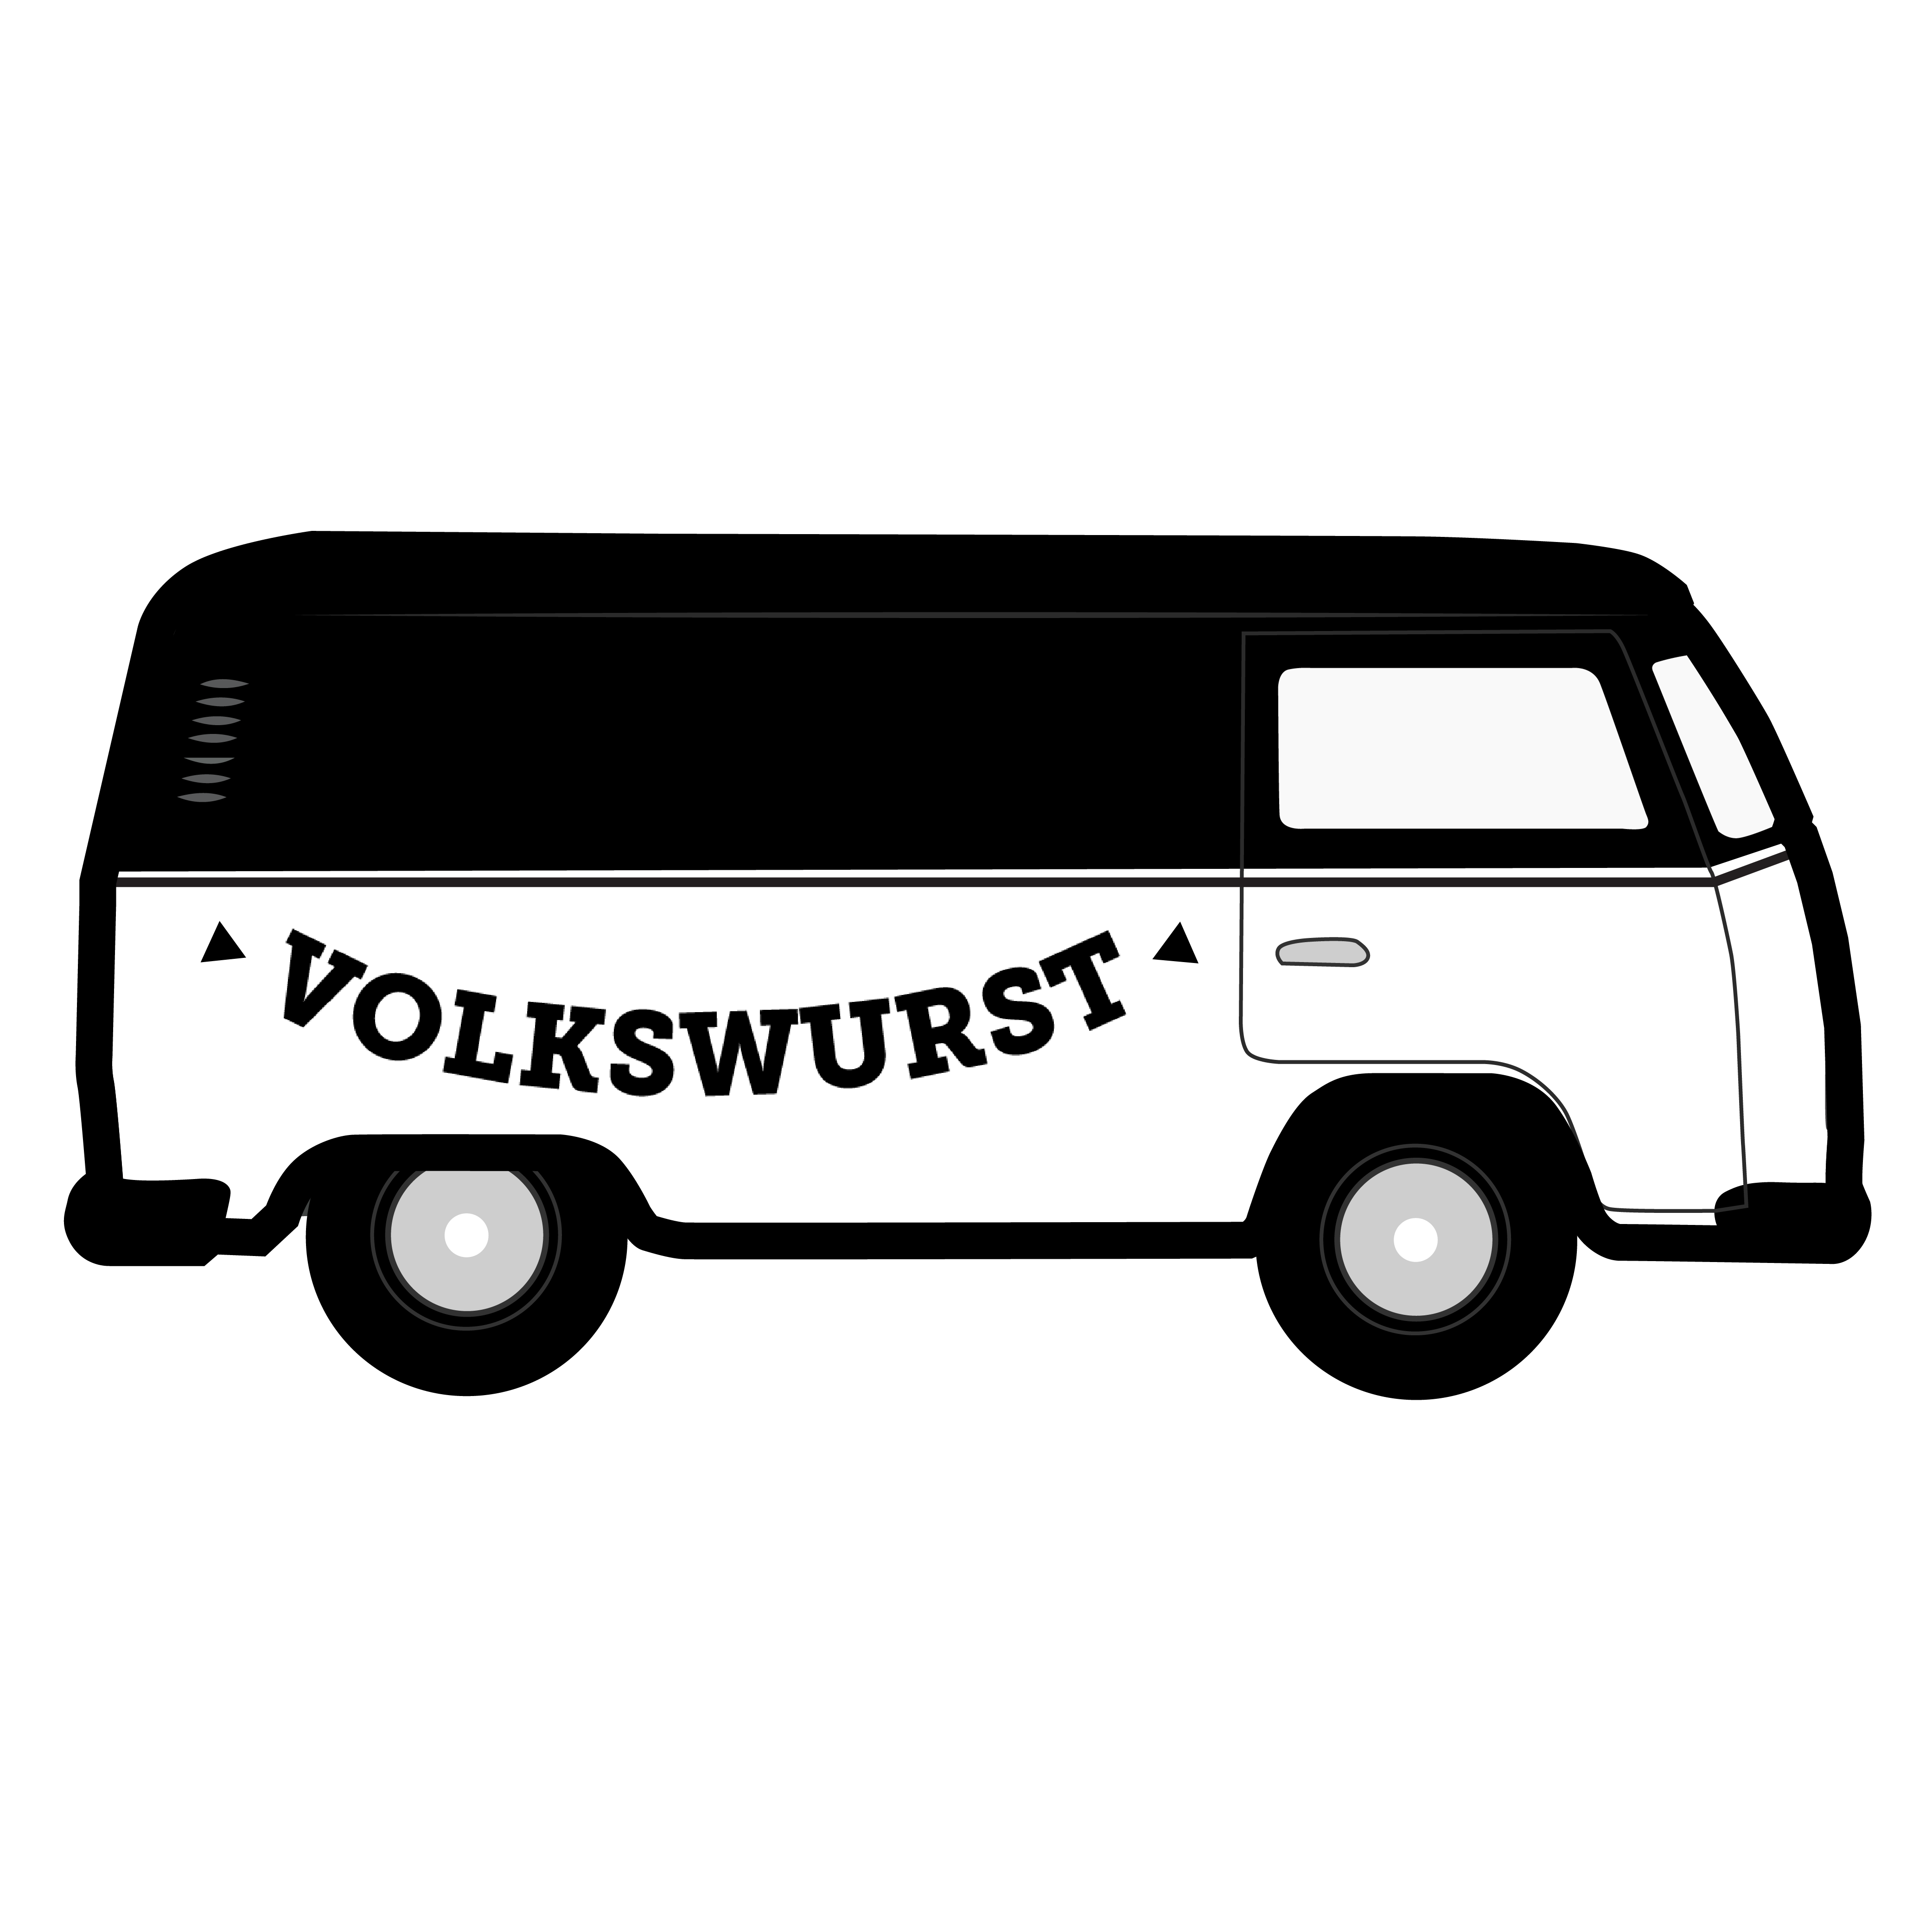 volkswurst stickers-14